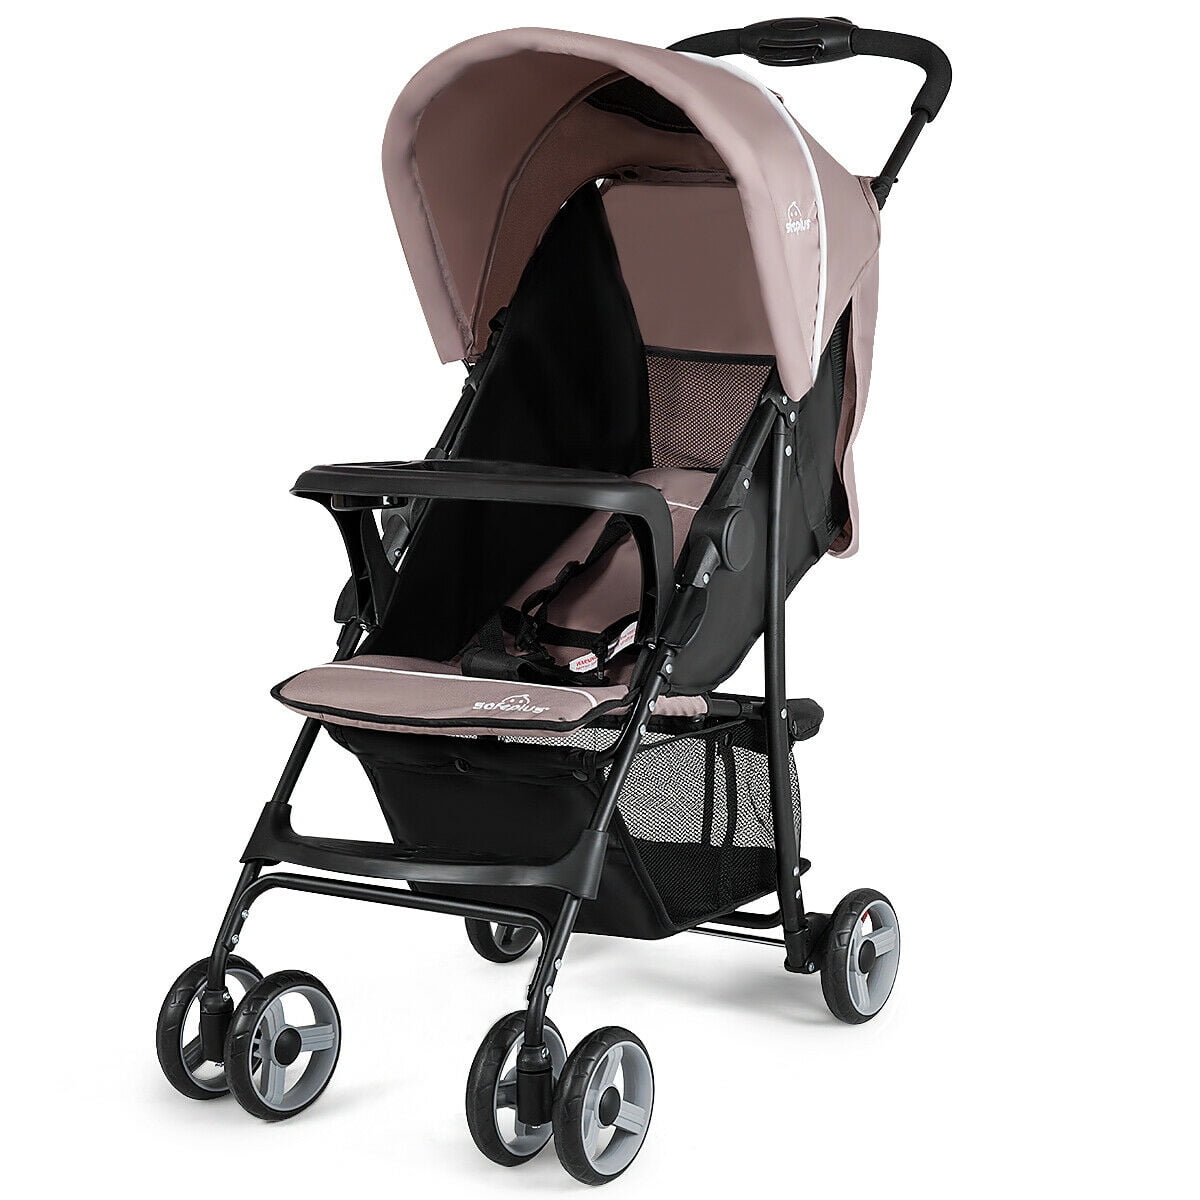 easy stroller for newborn